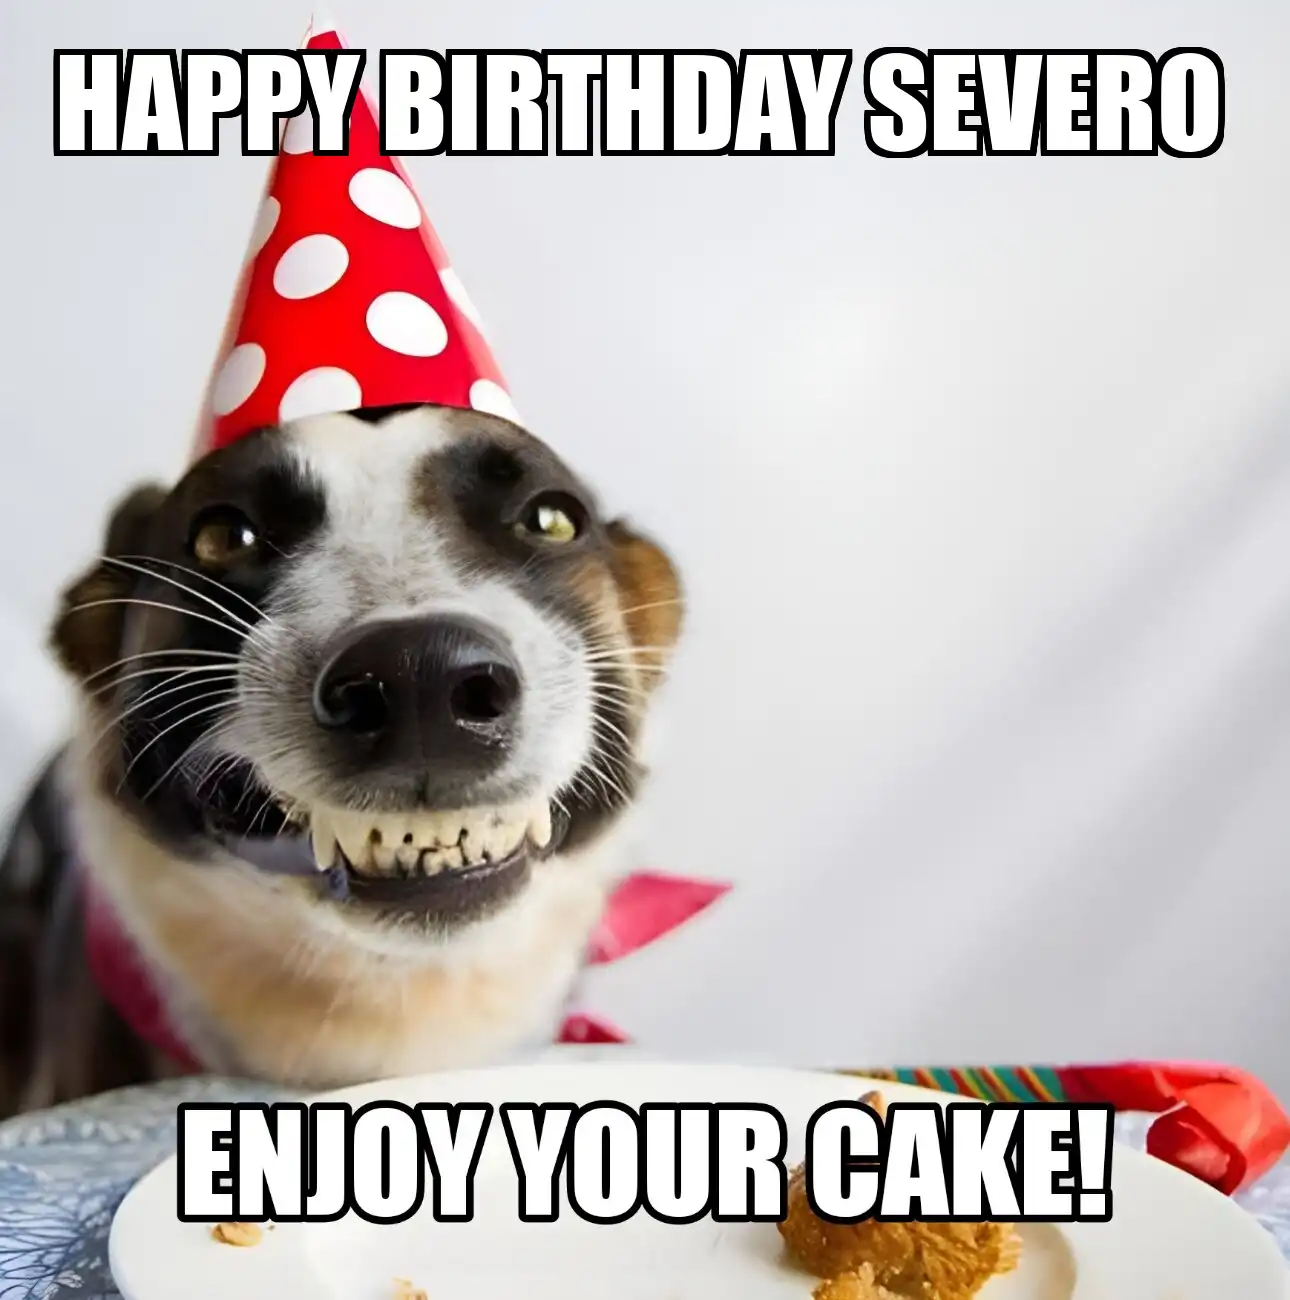 Happy Birthday Severo Enjoy Your Cake Dog Meme